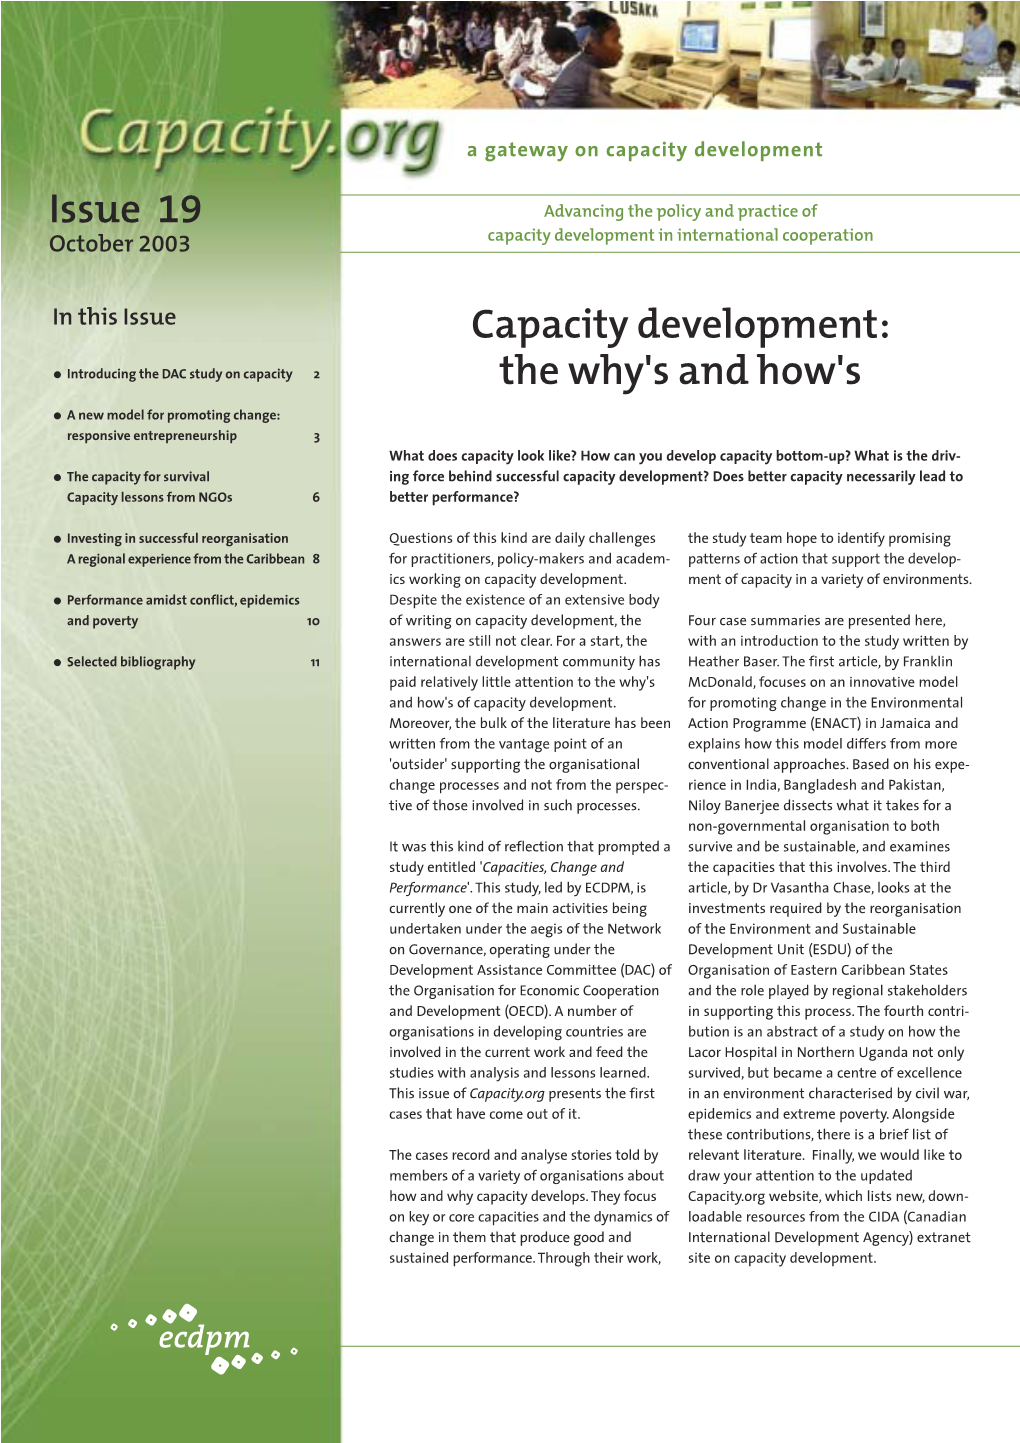 Capacity Development